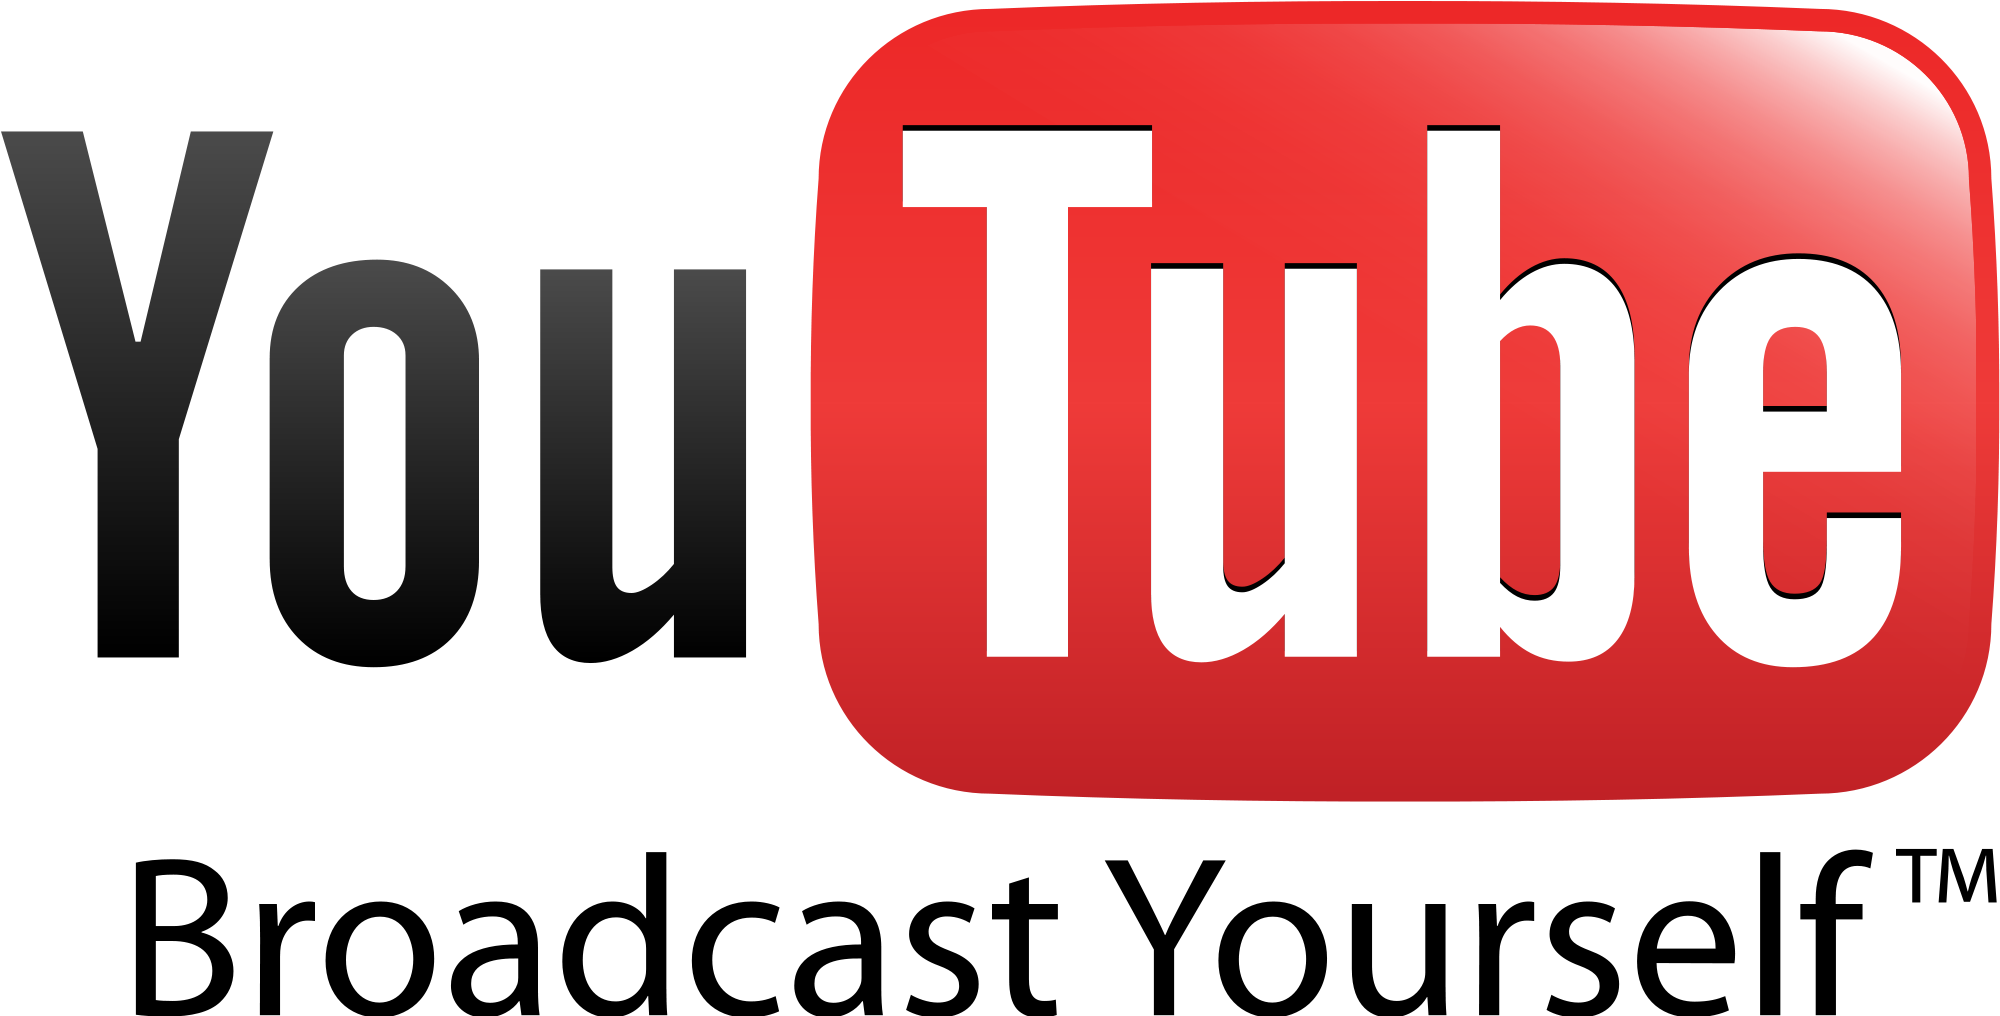 Youtube Logo Old - Old Youtube Logo 2005 (2272x1704)